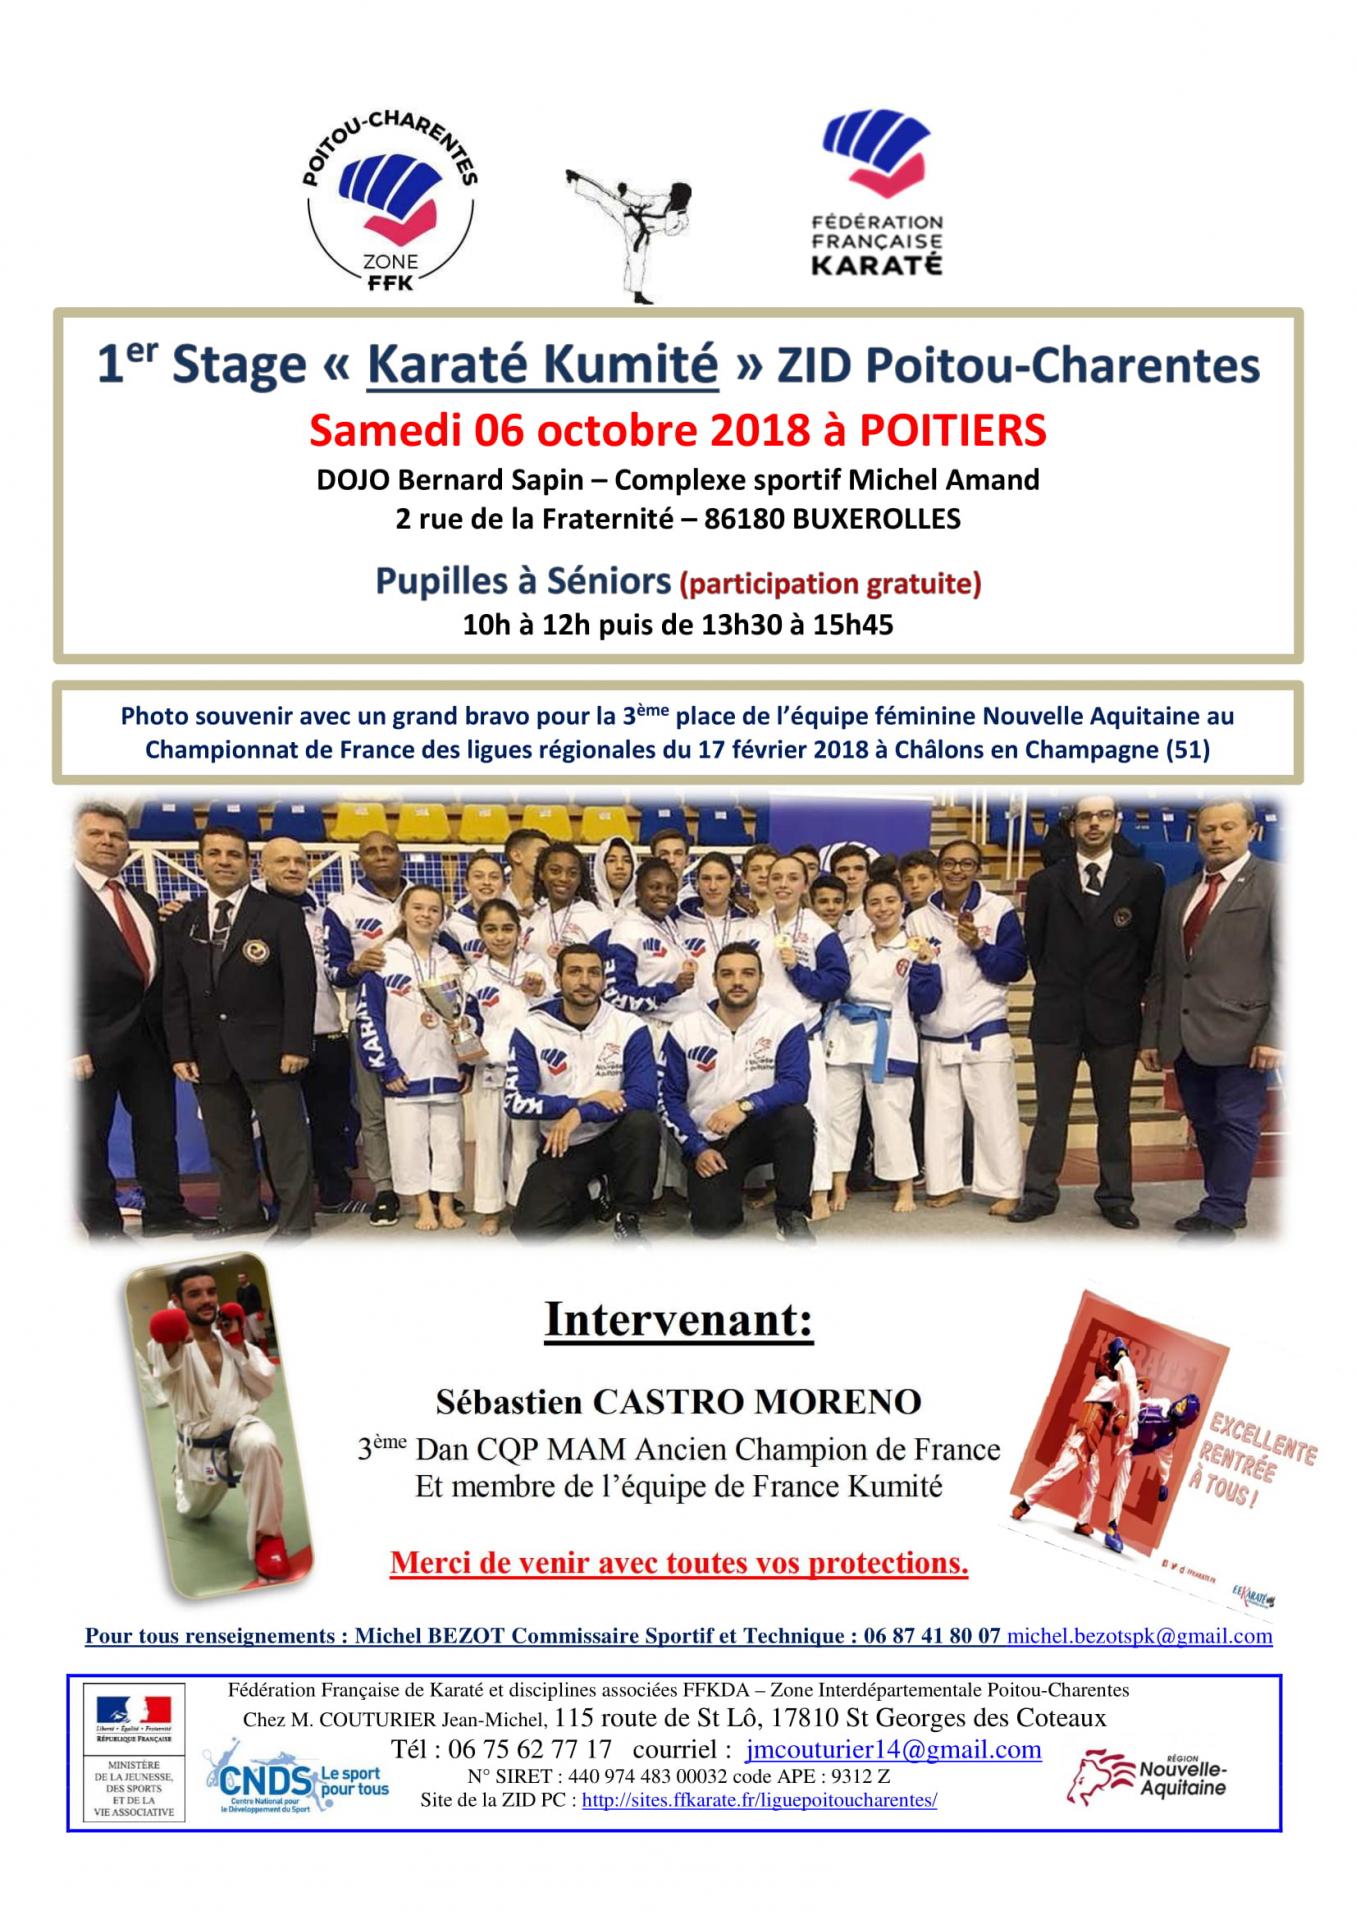 1er stage karate kumite zip pc du 06 octobre 2018 poitiers